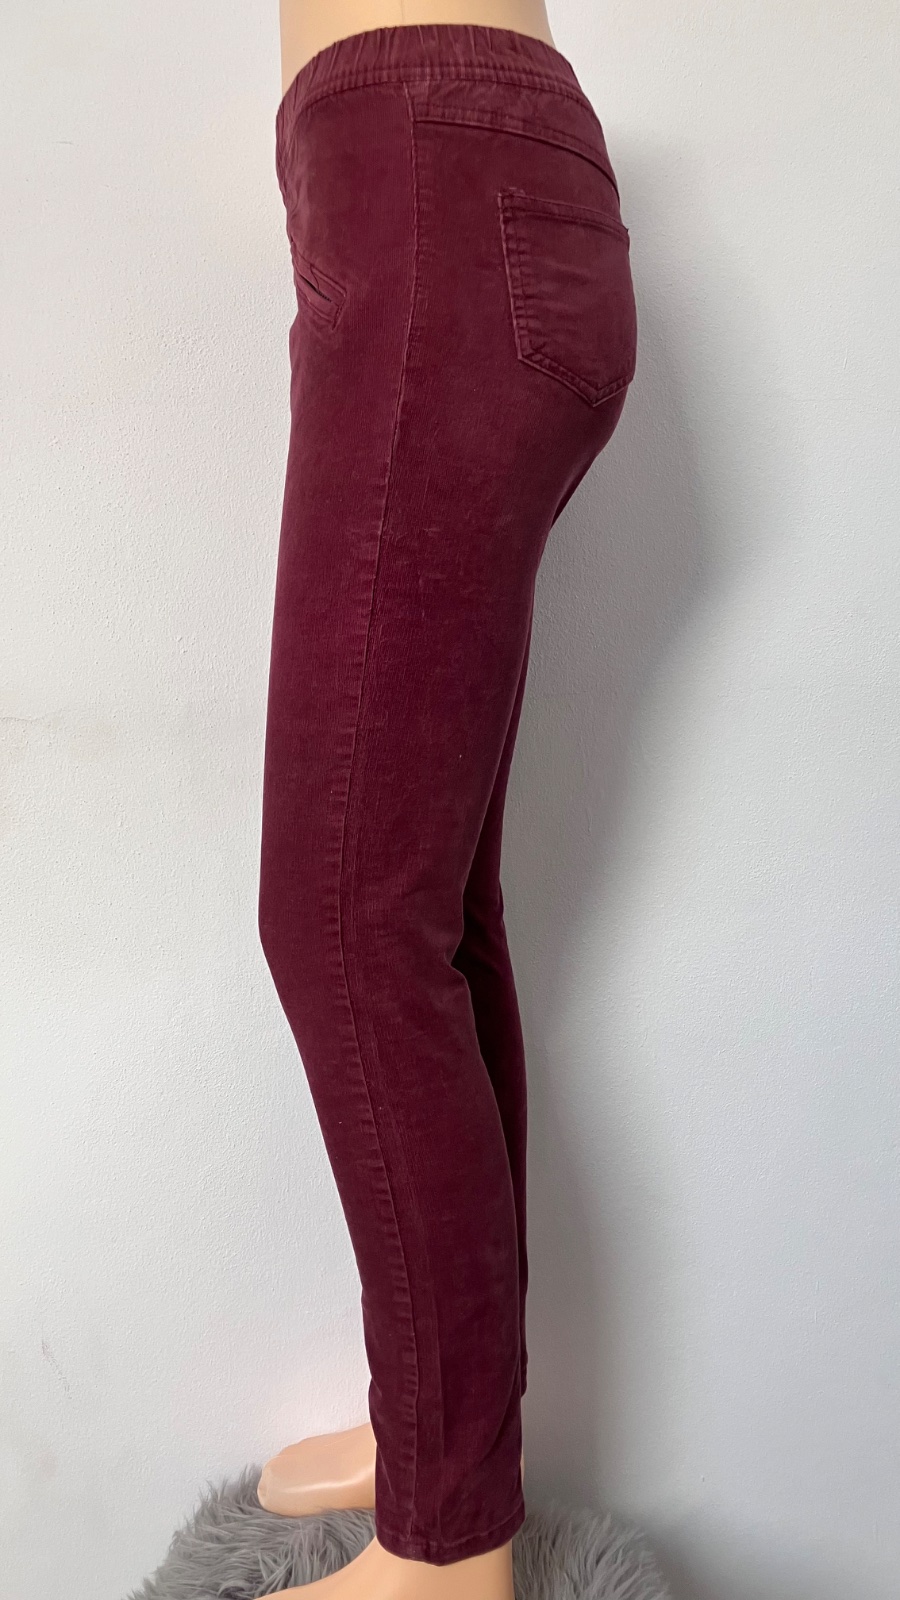 Ružové džínsy Lupilu (86)